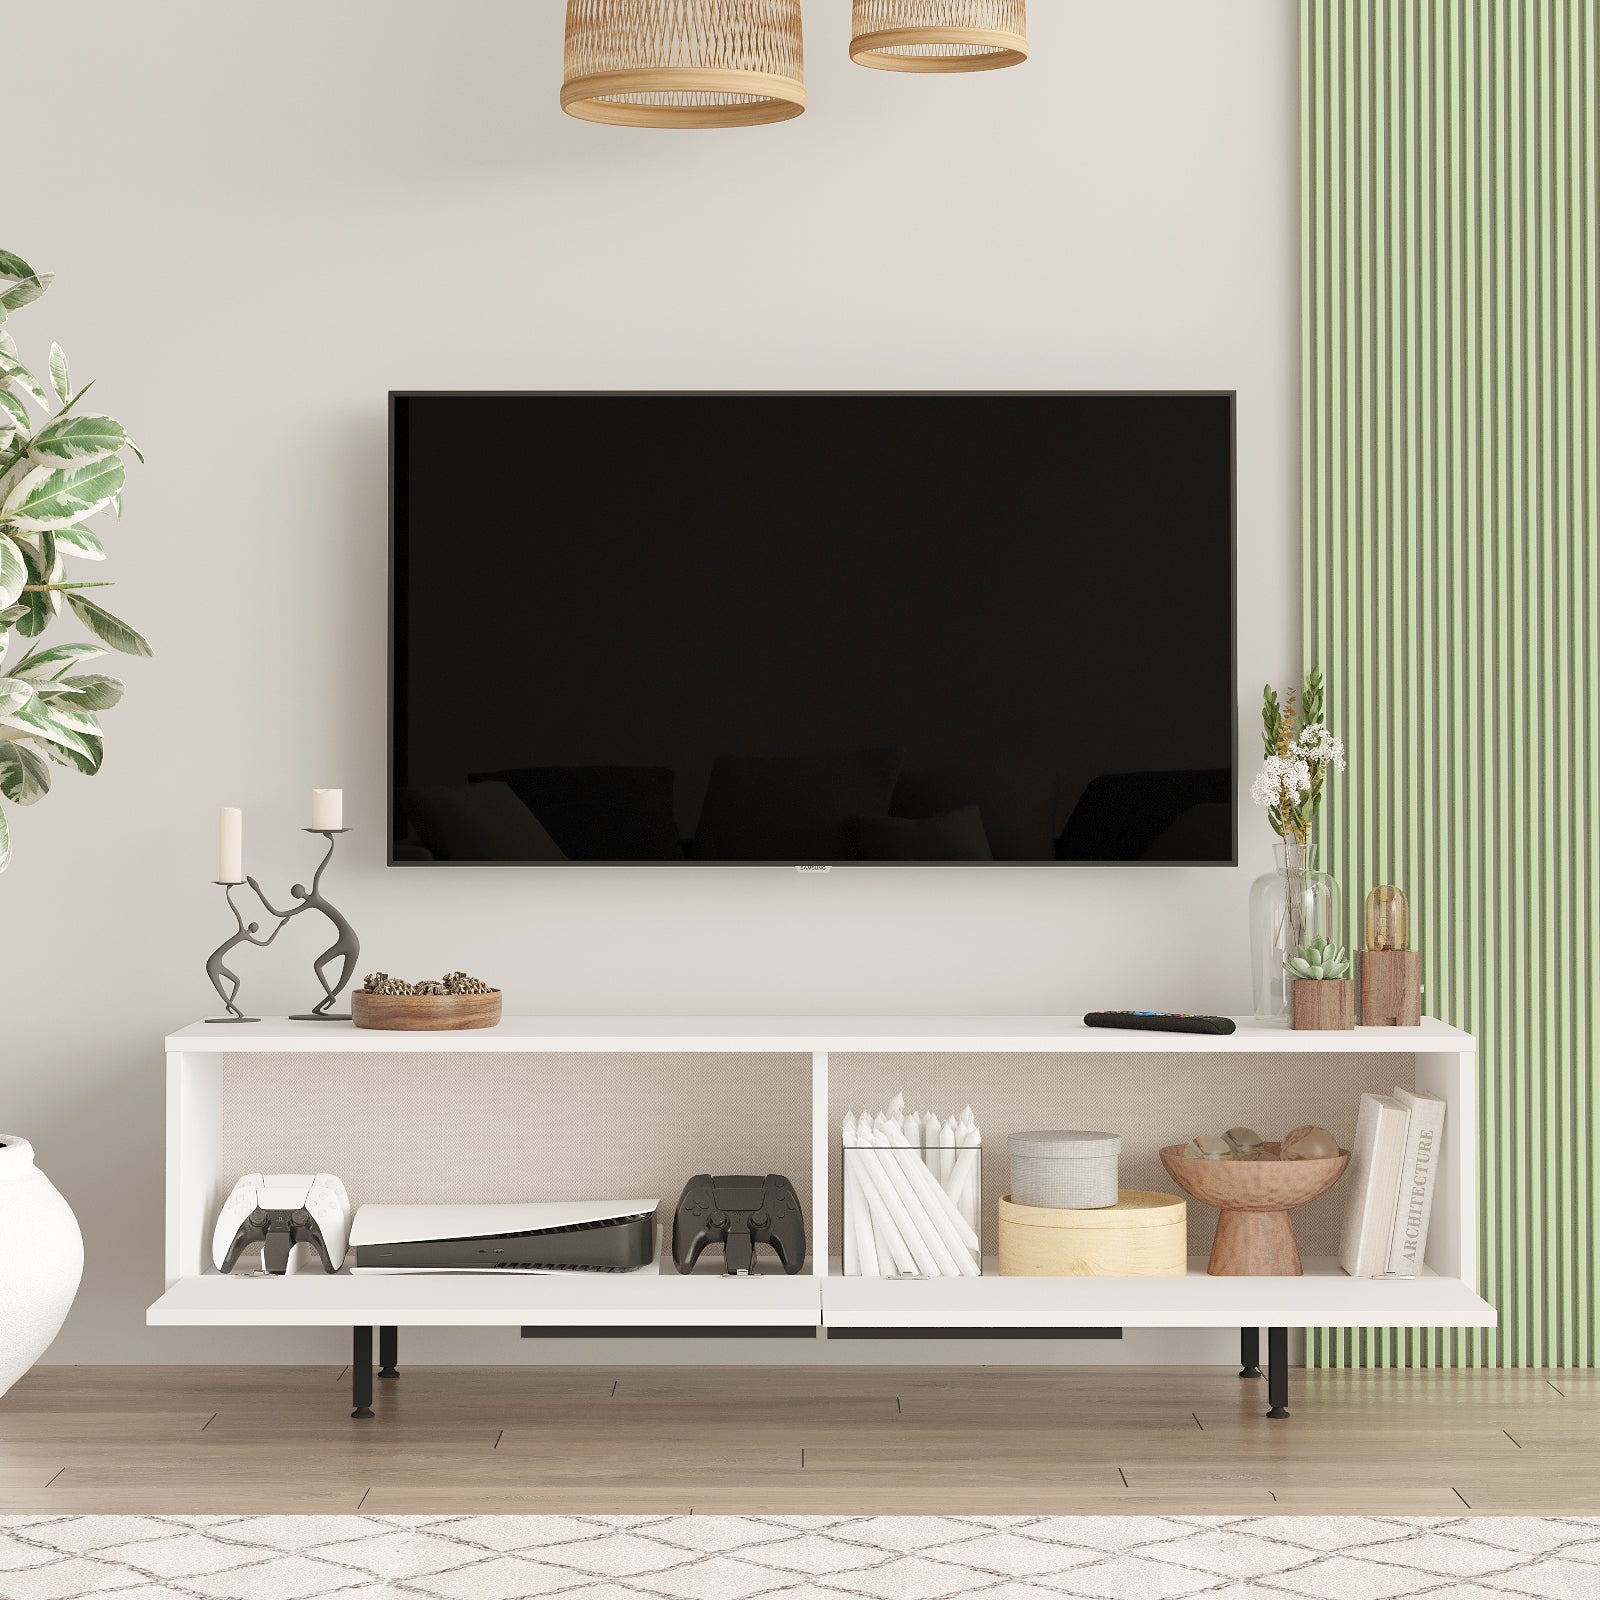 Blanc- Élégant meuble TV 'AURORA' présenté dans un intérieur lumineux.